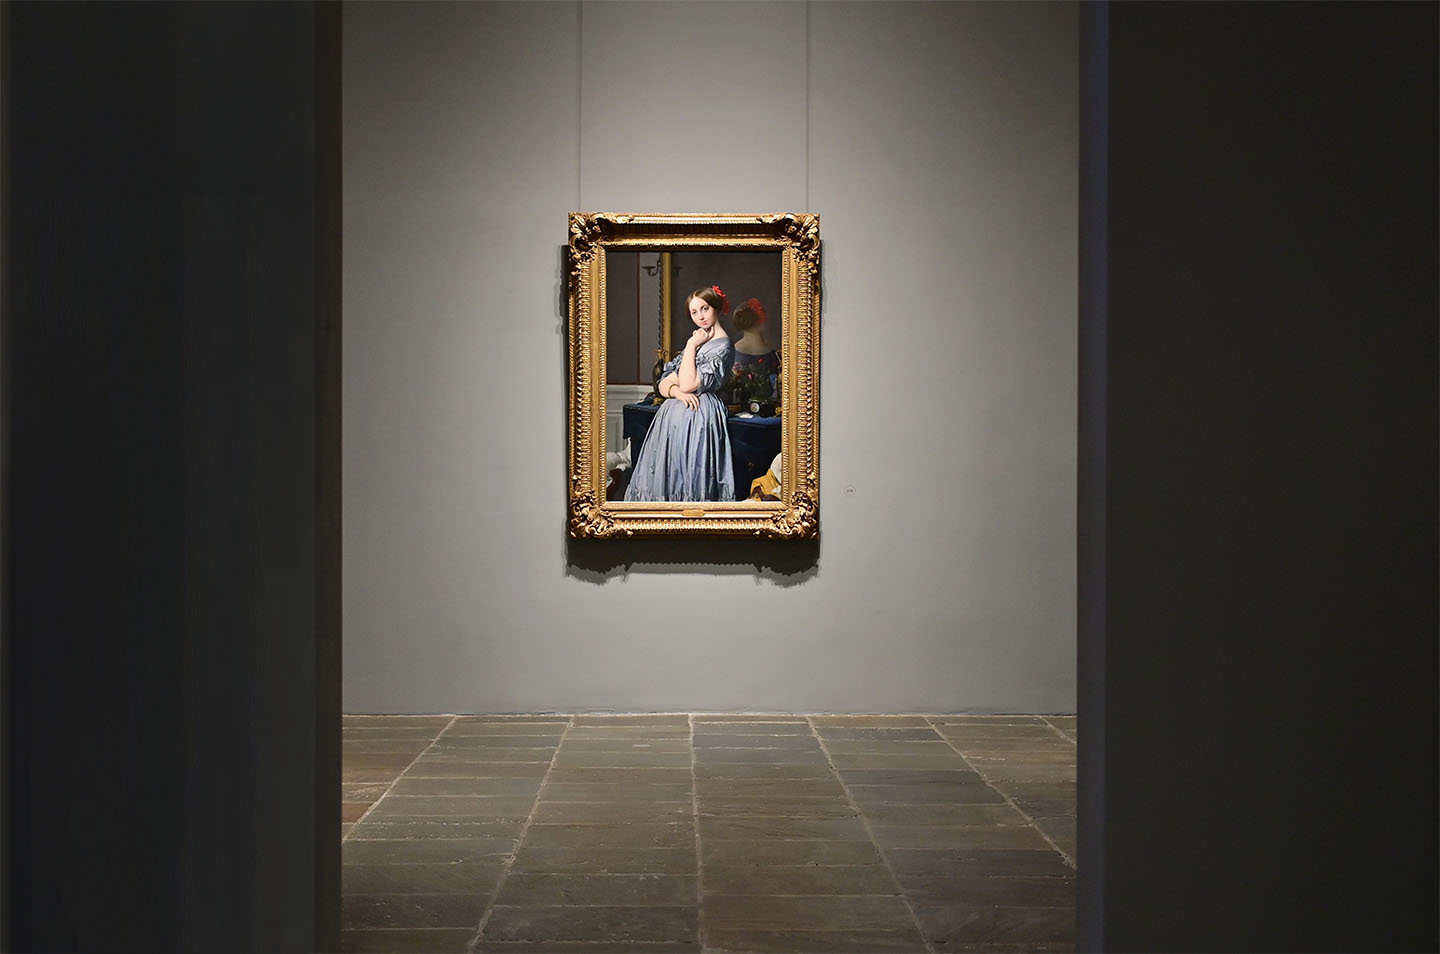 Bức tranh “Louise, Công chúa de Broglie, về sau là Nữ bá tước d’Haussonville” của danh họa Ingres được treo tại Bảo tàng The Frick Collection ở Thành phố New York. (Ảnh: Angela Weiss/Getty Images)